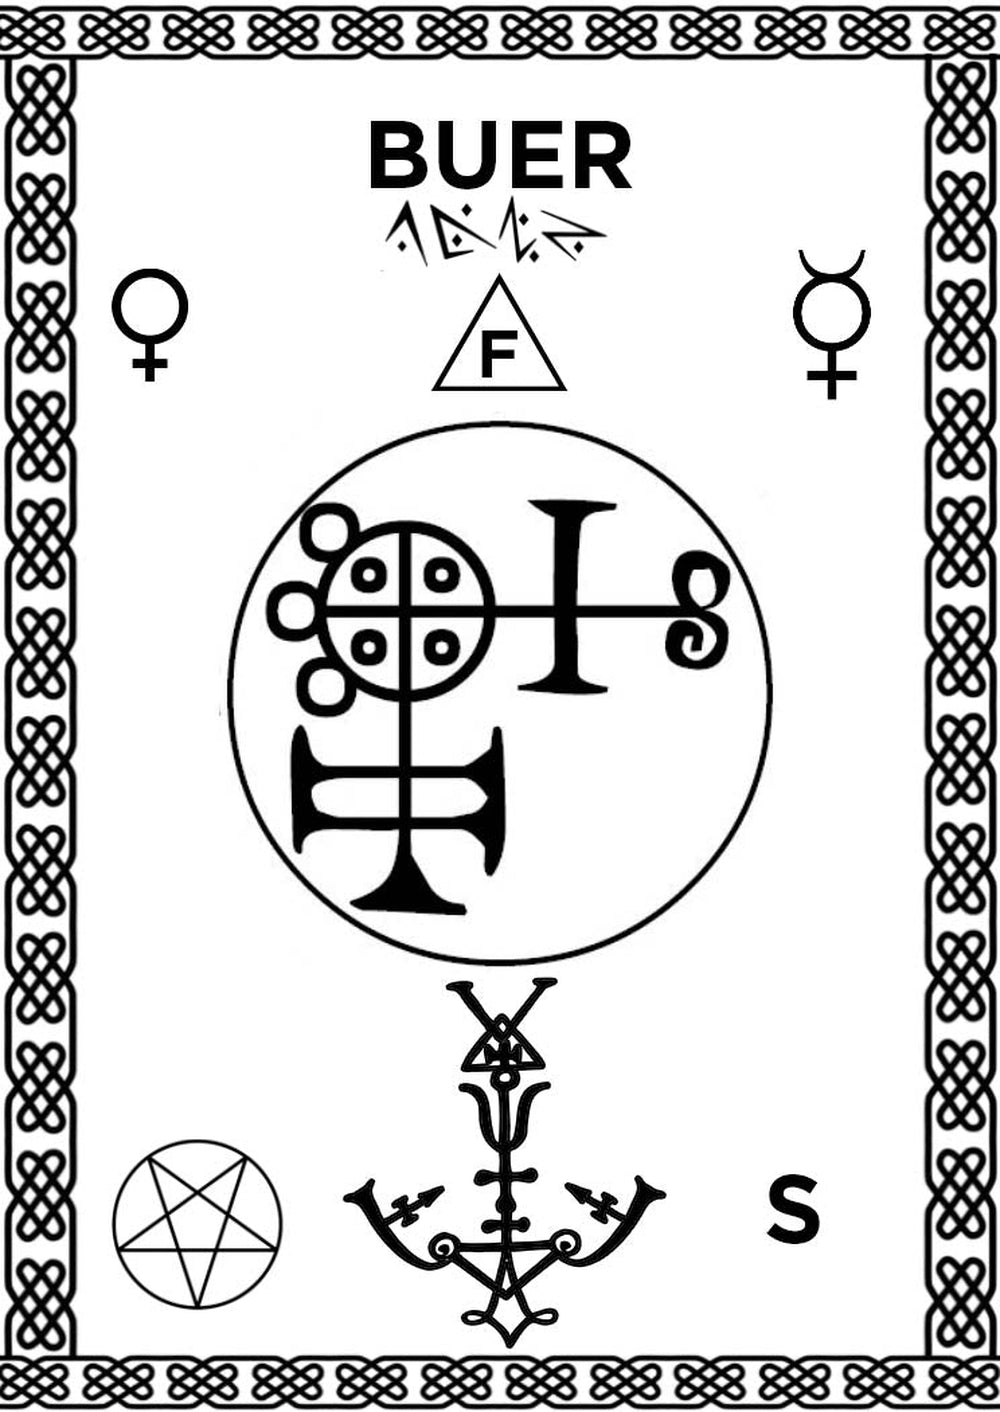 Doa-Alignment-Pad-dengan-Sigil-dari-Buer-untuk-rumah-altar-Sihir-2